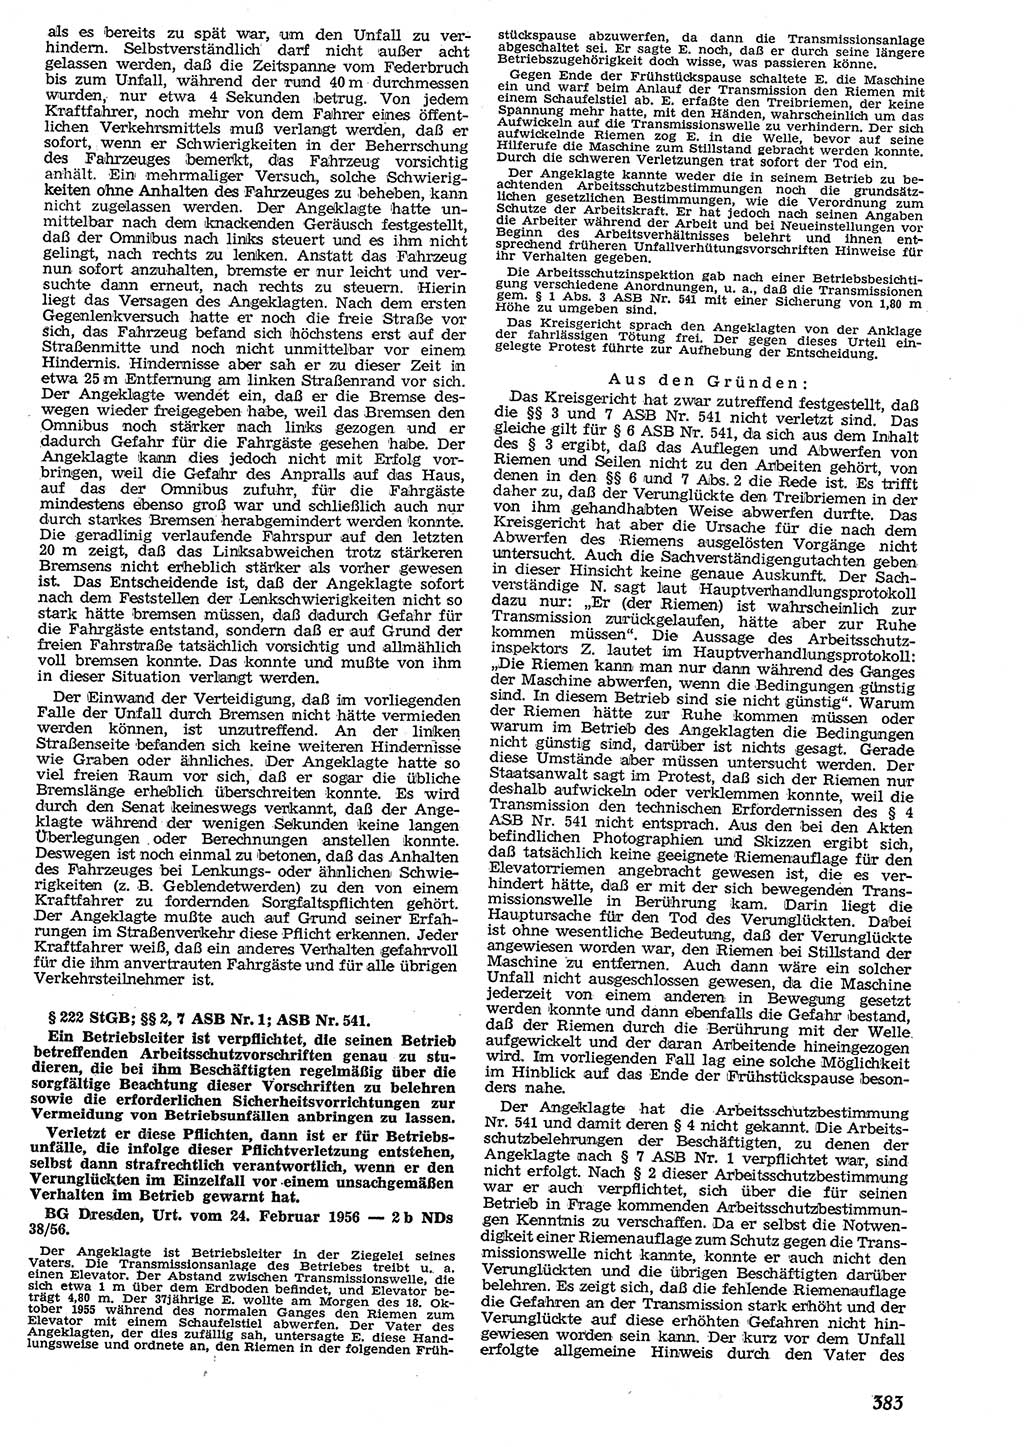 Neue Justiz (NJ), Zeitschrift für Recht und Rechtswissenschaft [Deutsche Demokratische Republik (DDR)], 10. Jahrgang 1956, Seite 383 (NJ DDR 1956, S. 383)